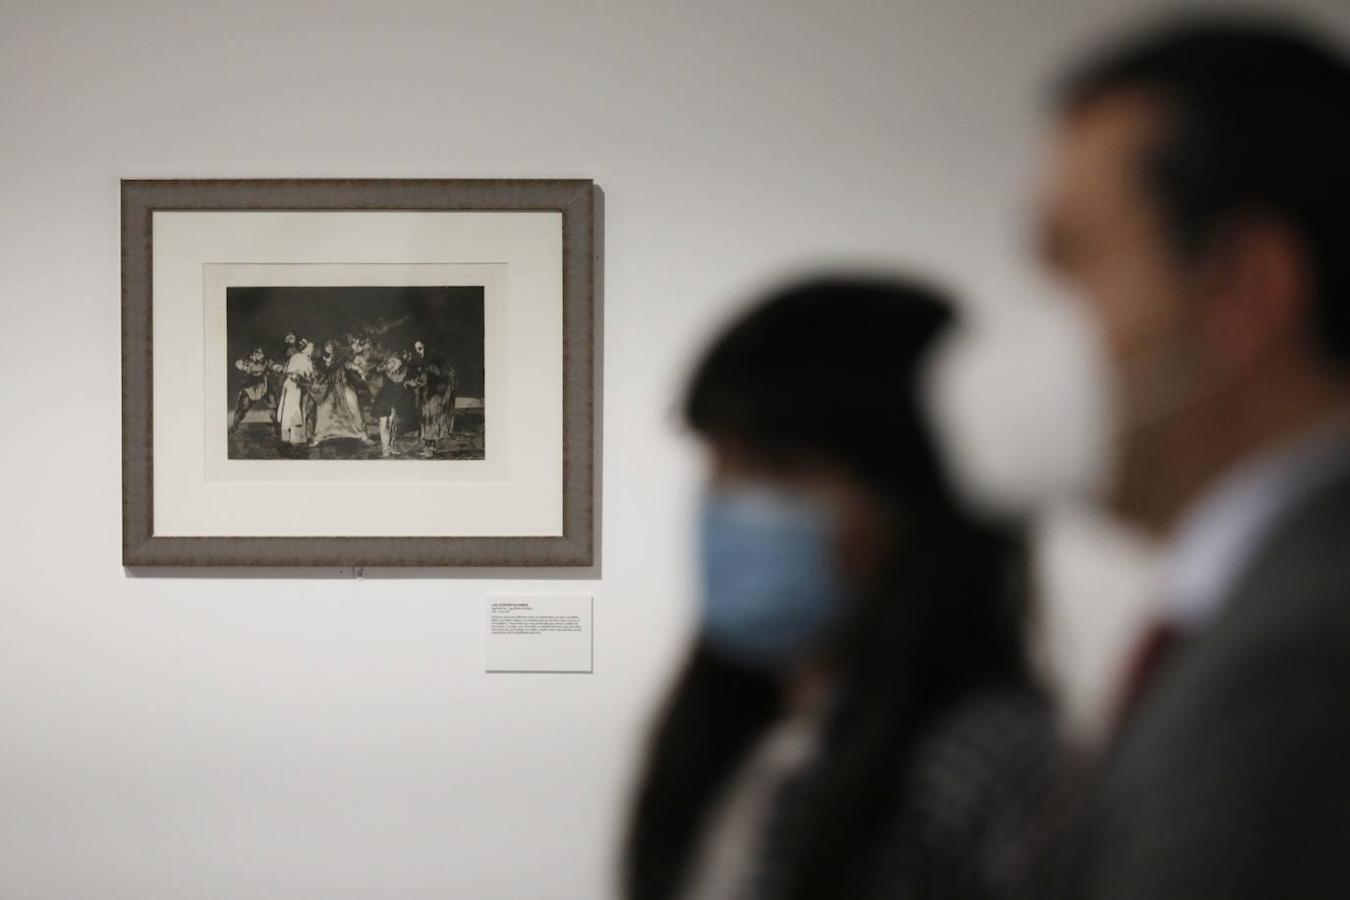 «Las mujeres de Goya» en la Fundación Cajasol de Córdoba, en imágenes